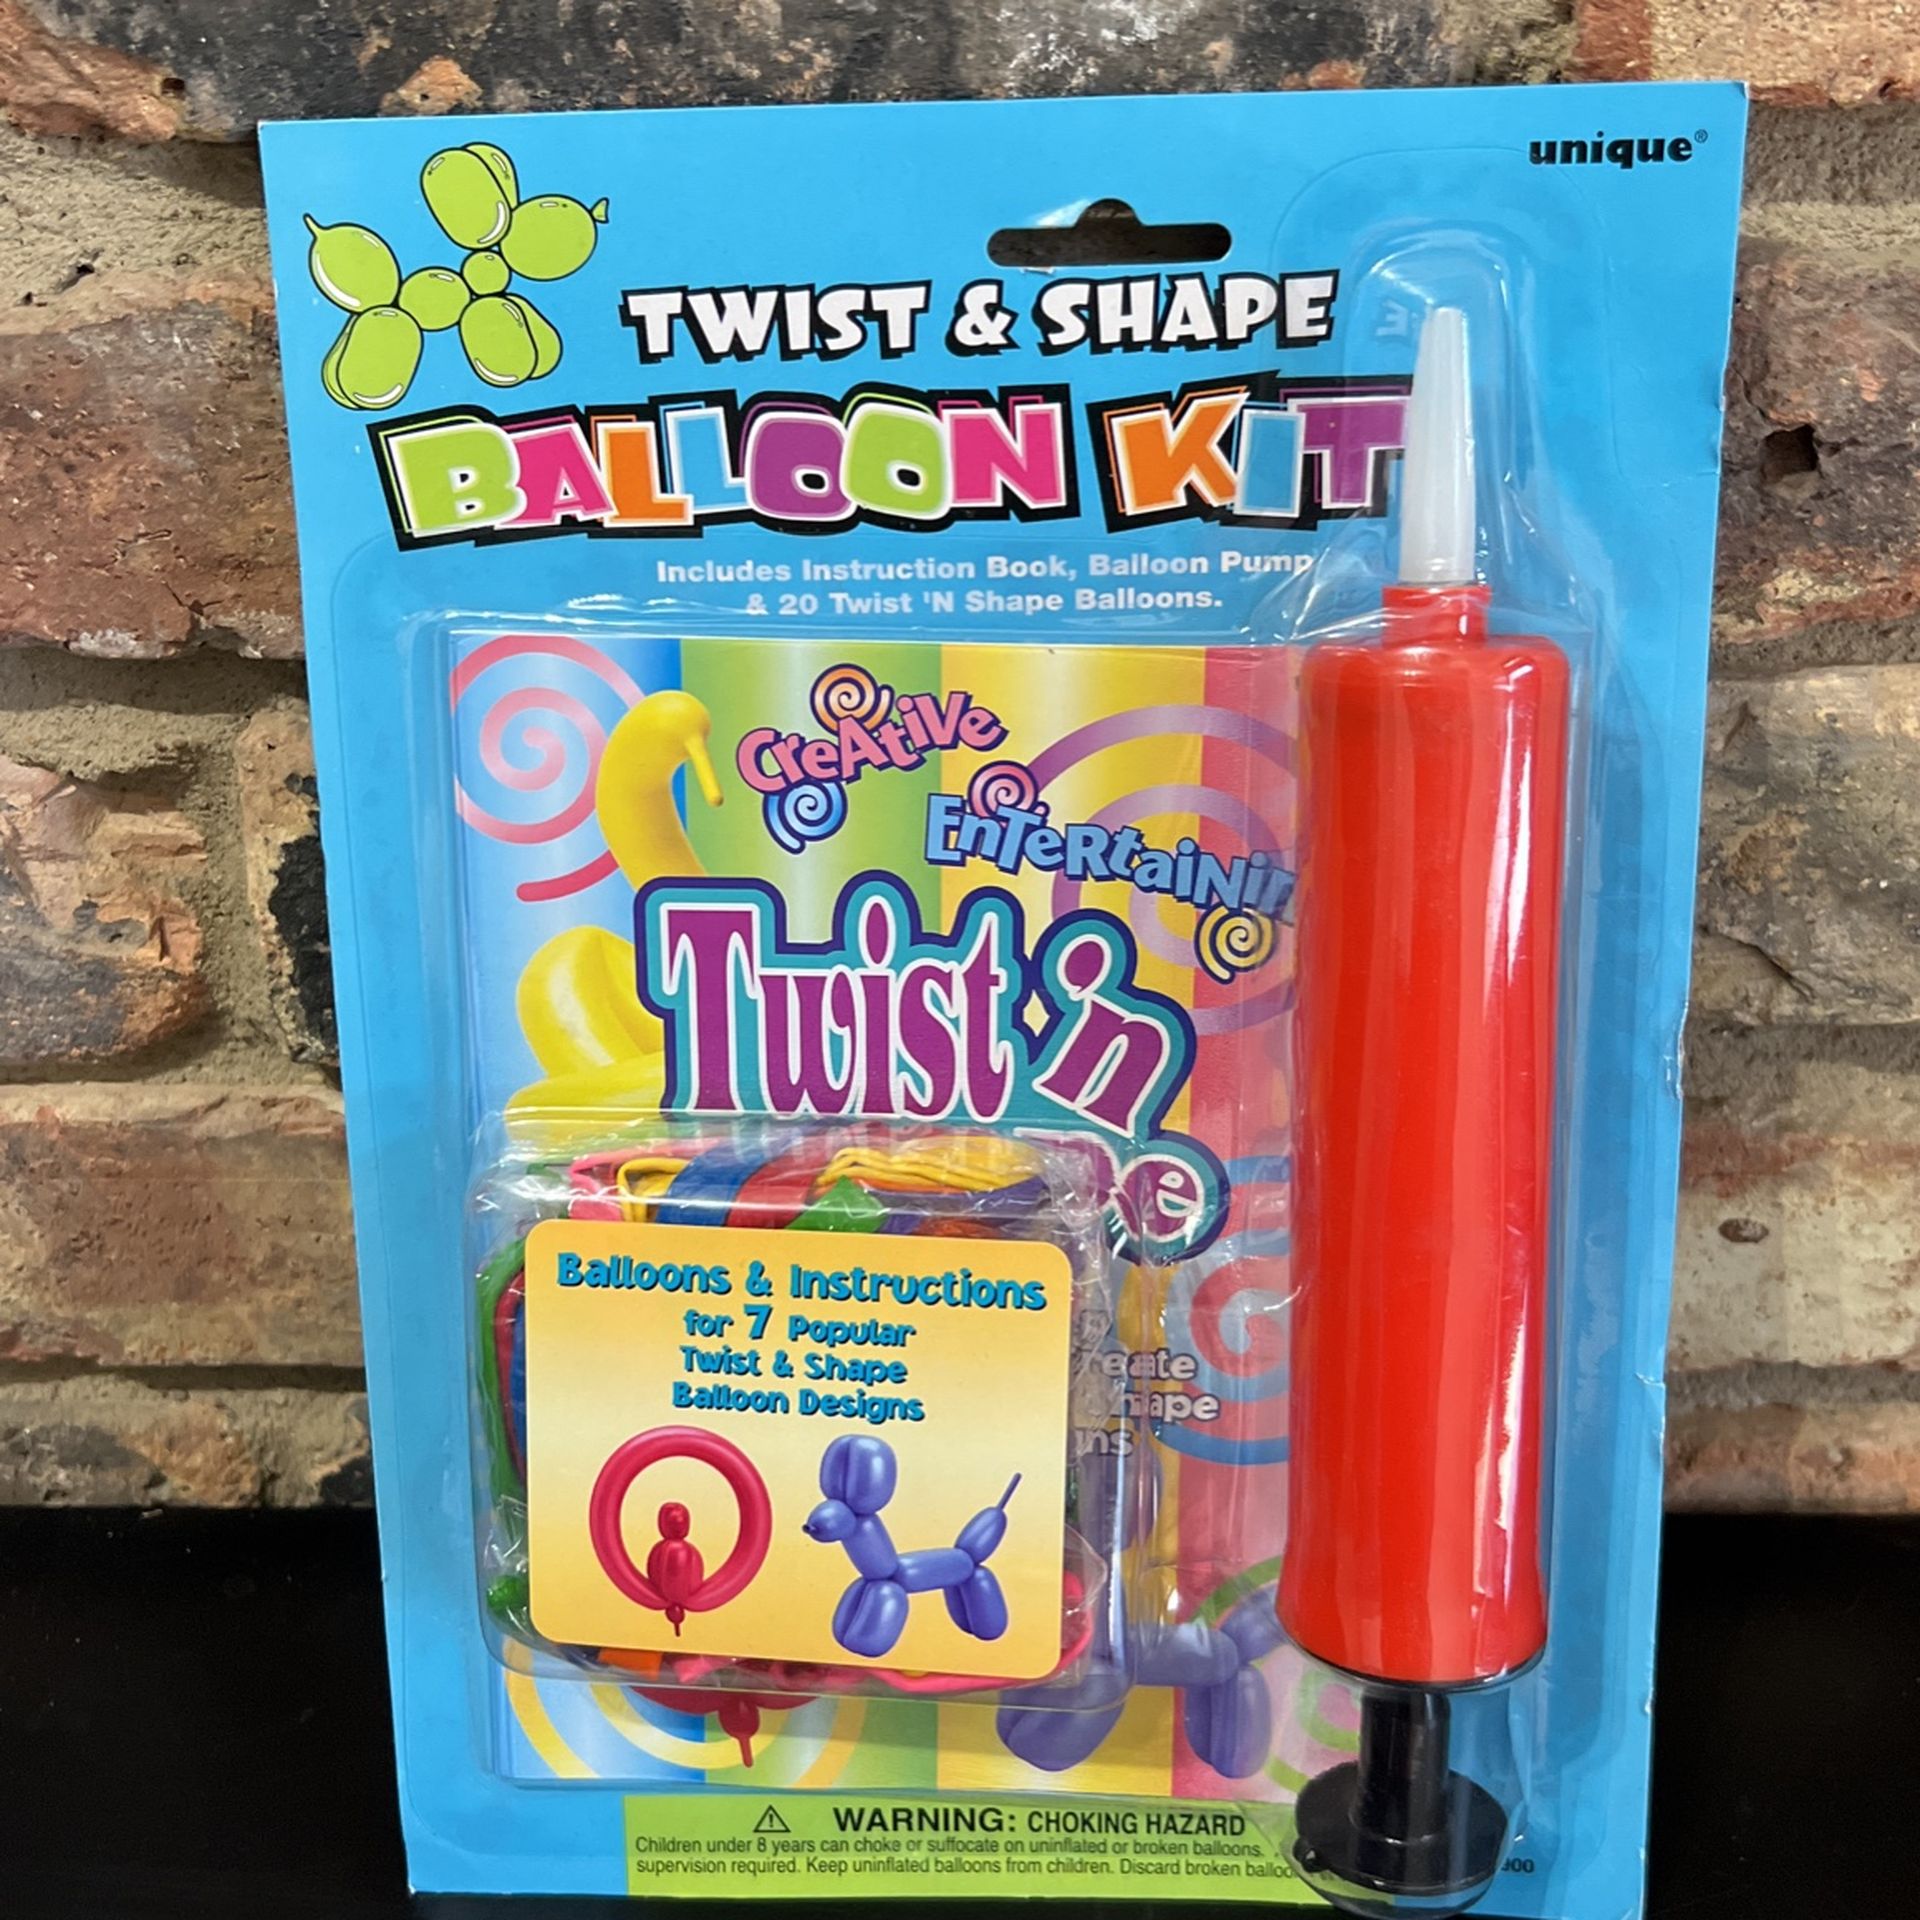 Twist and Shape Balloon Kit